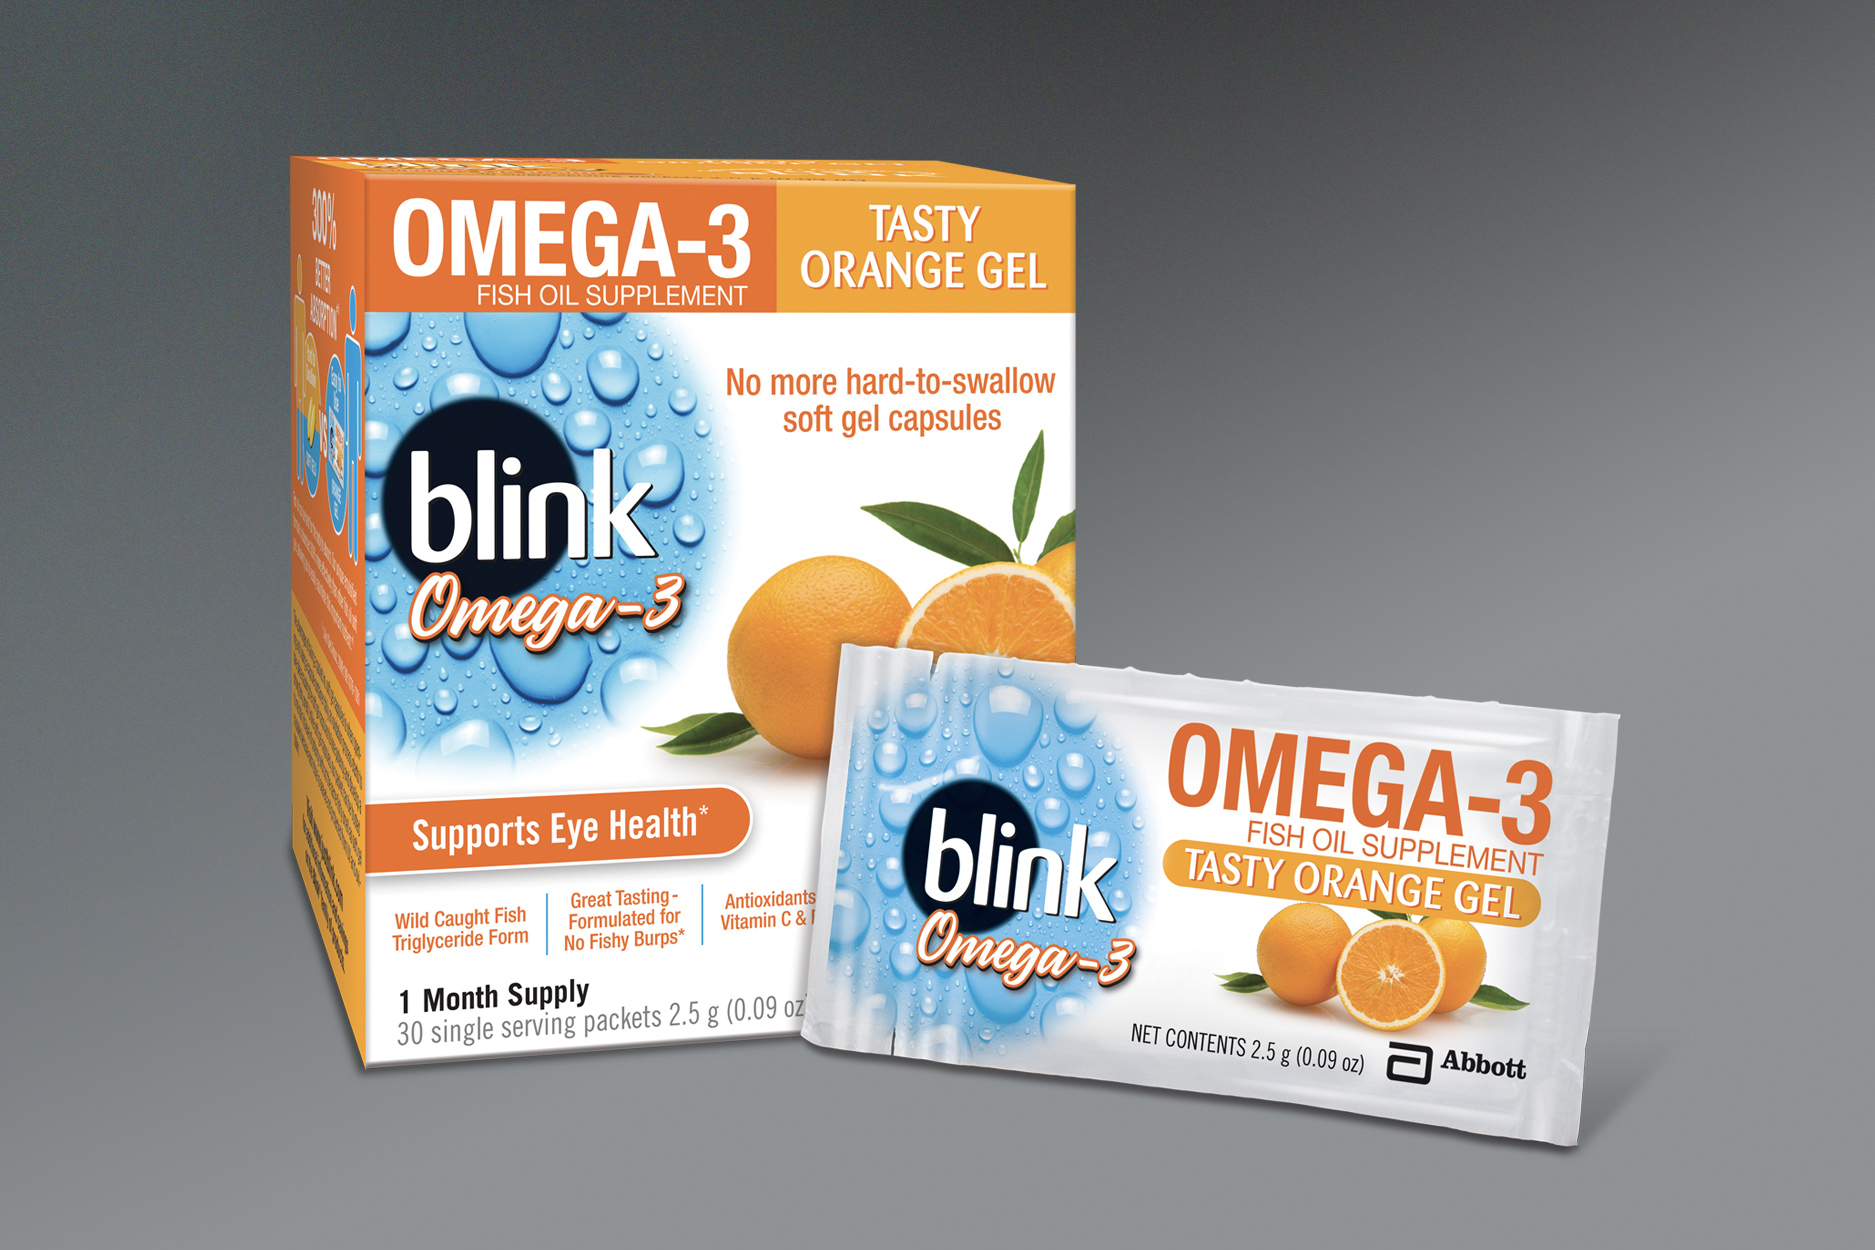 abbott omega 3-packaging design